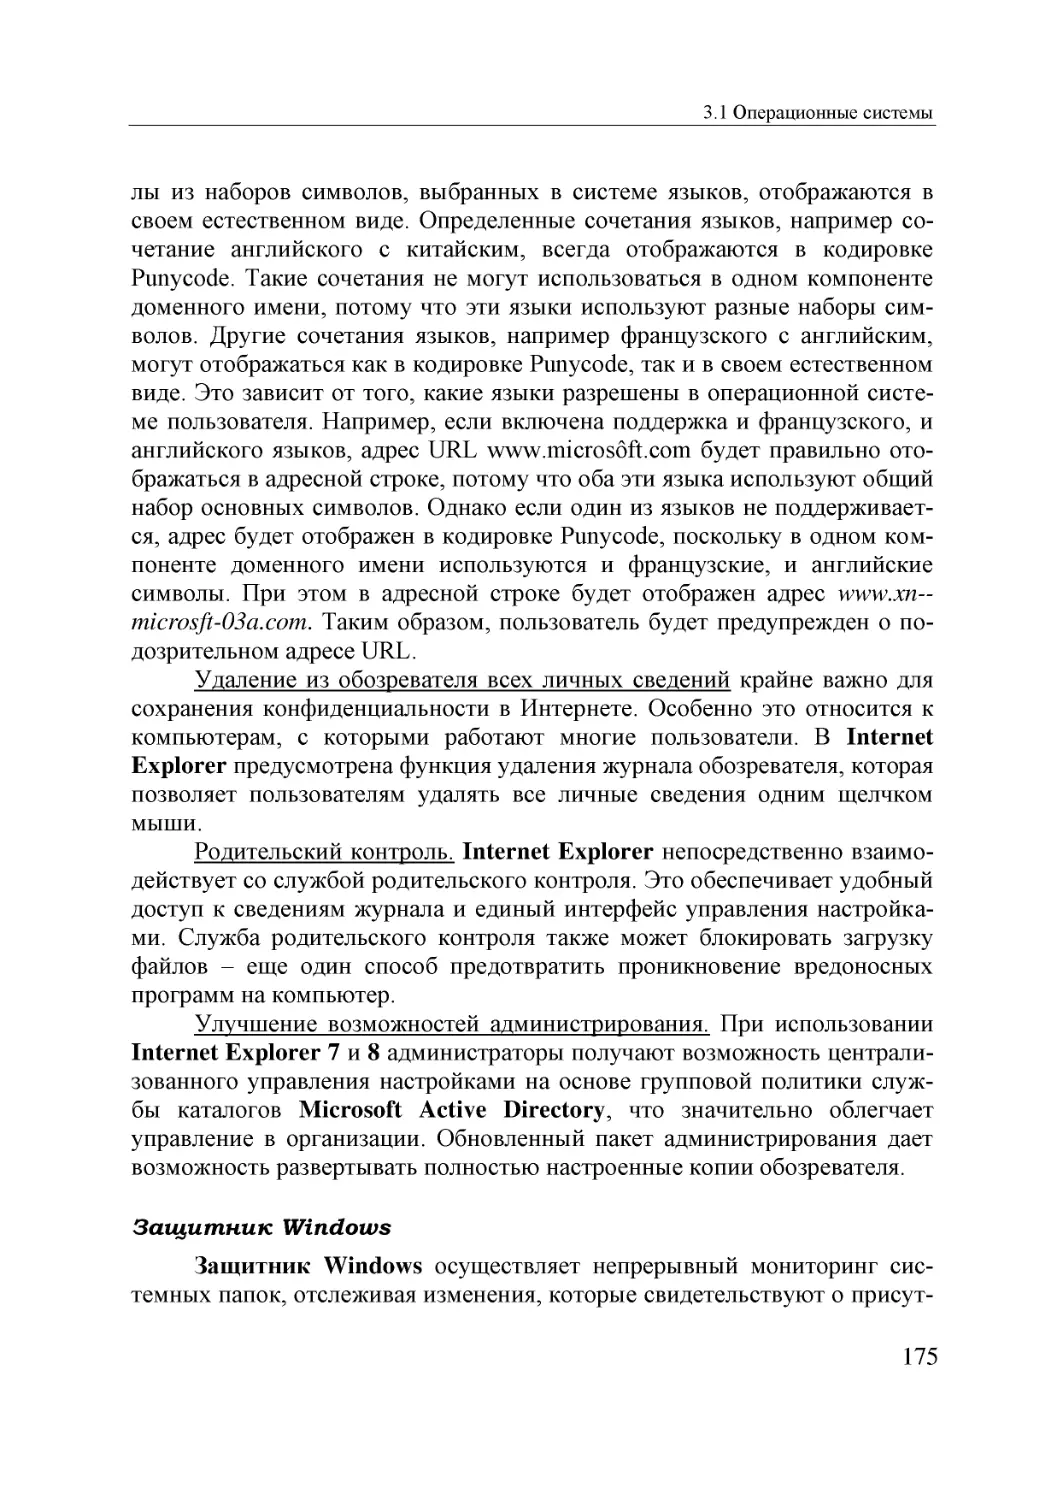 Informatika_Uchebnik_dlya_vuzov_2010 175